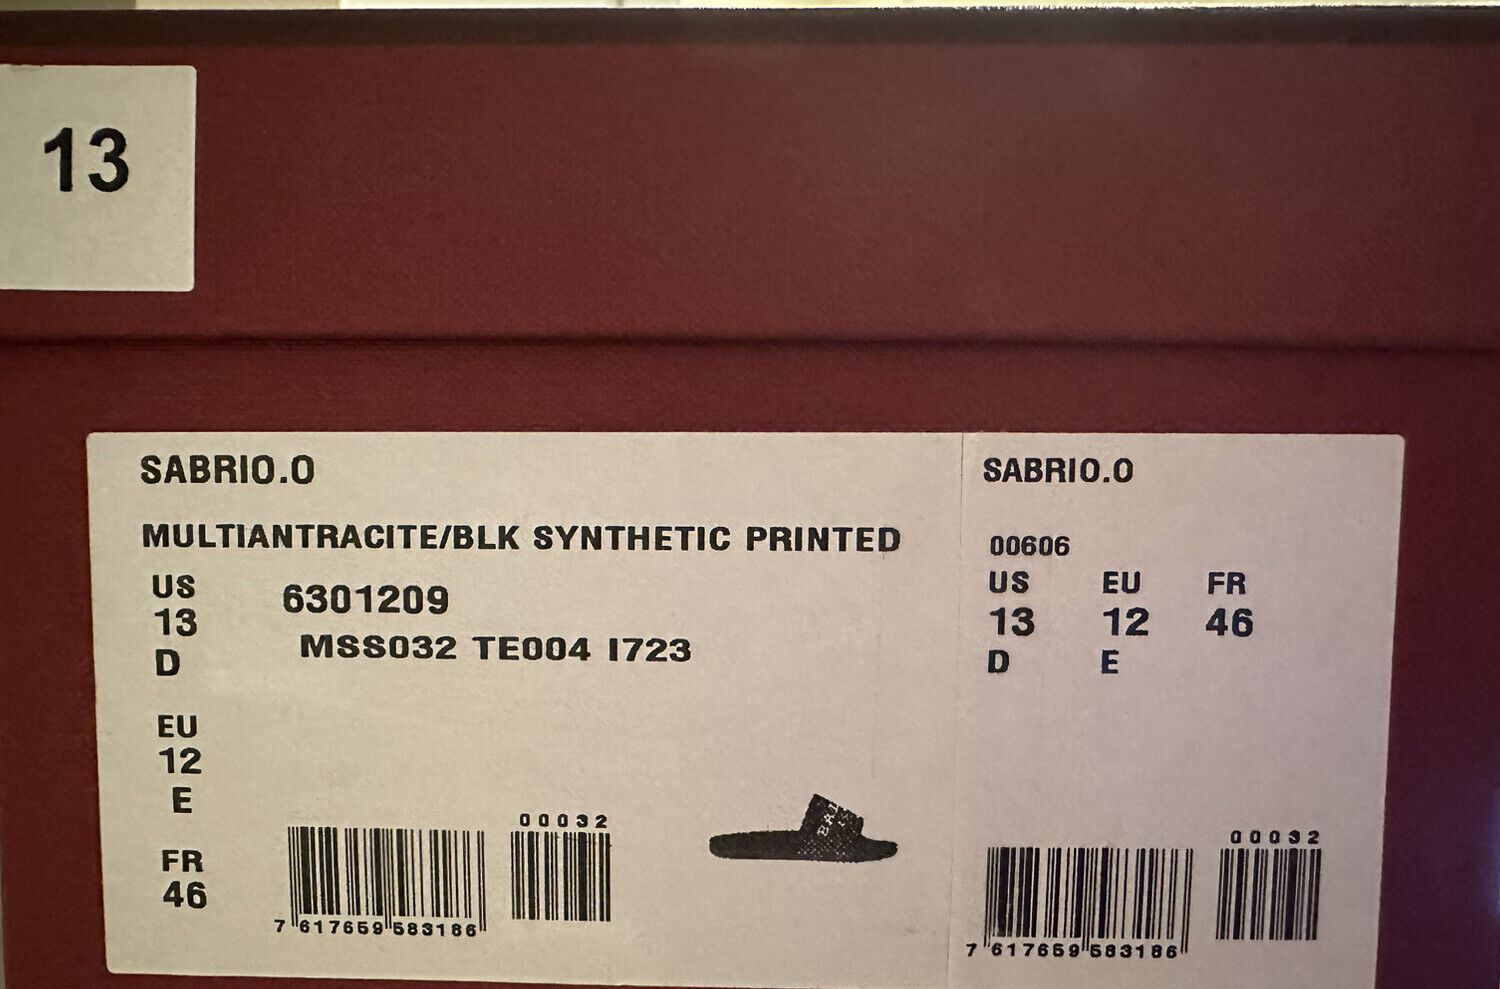 Мужские сандалии NIB Bally Sabrio, черные резиновые сандалии с логотипом, 13, США, 6301209, Италия 